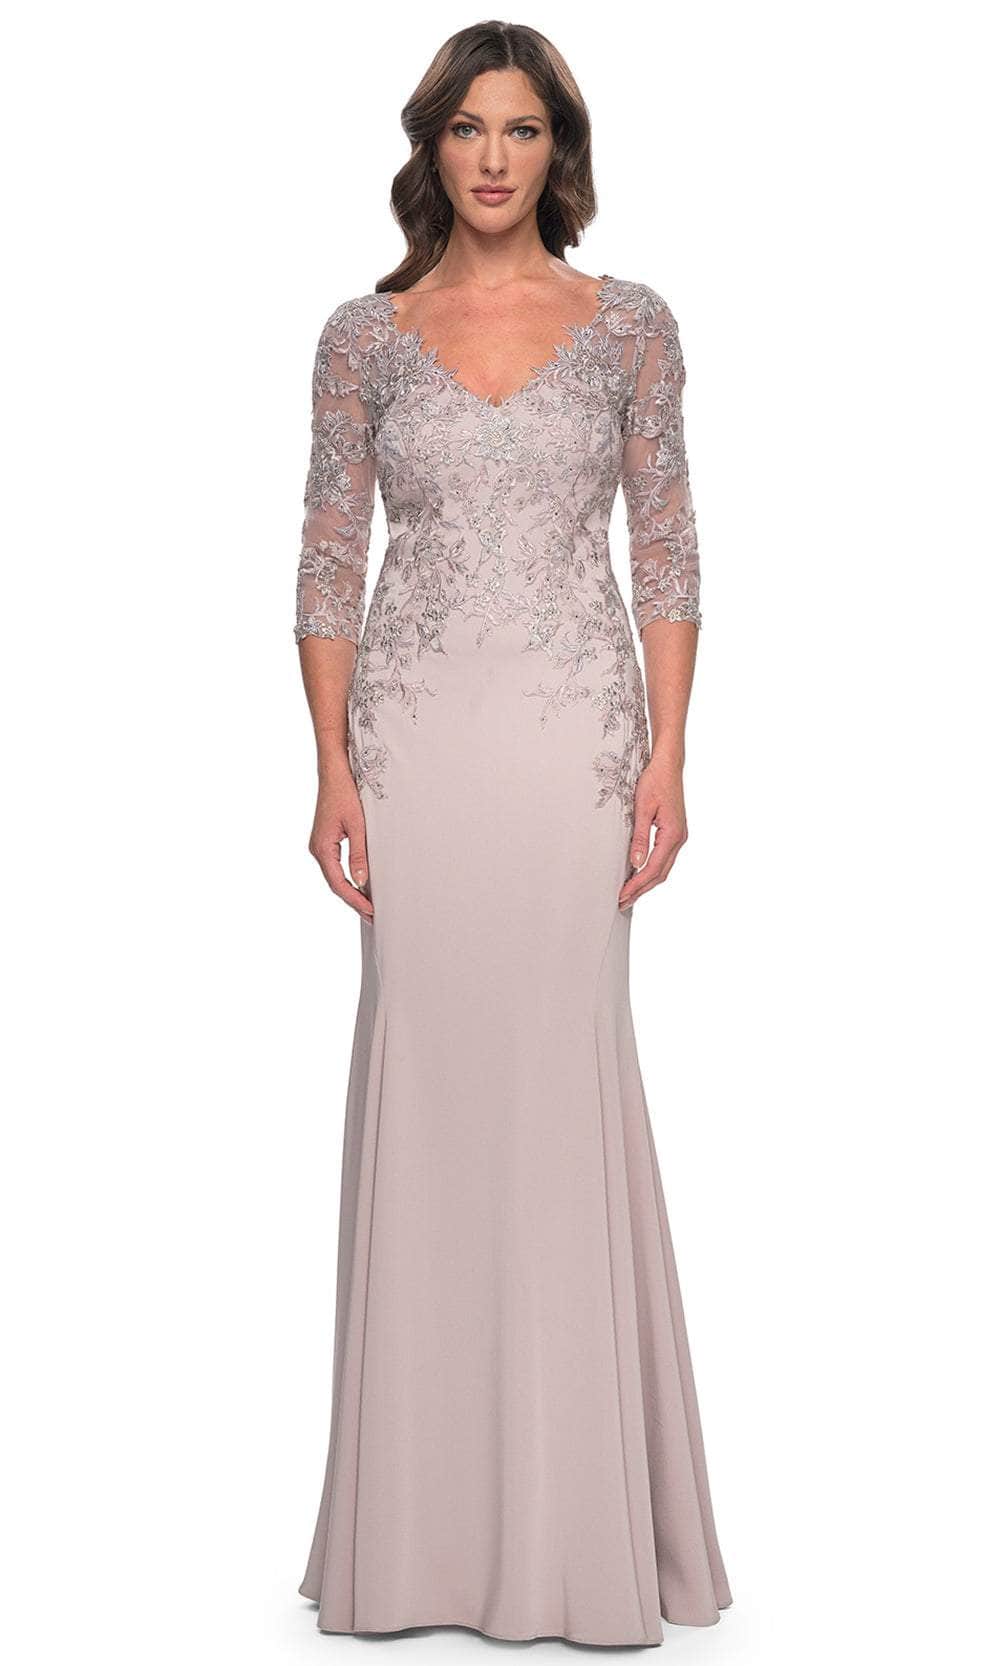 Image of La Femme 31194 - Lace Applique Quarter Sleeve Evening Gown